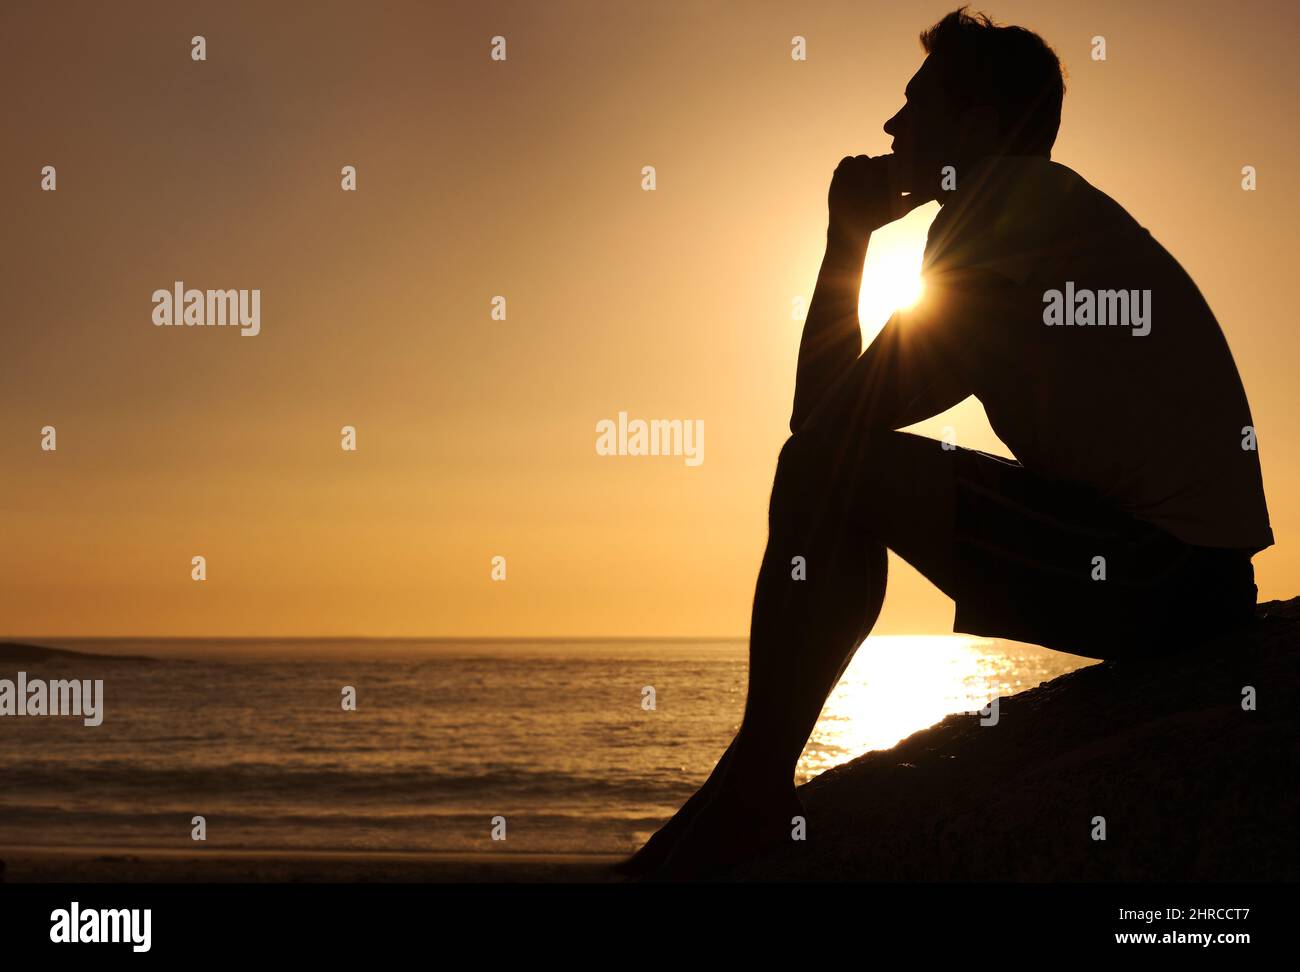 Ricerca di risposte lifes. Silhouette di un uomo pensieroso seduto accanto all'oceano - copyspace. Foto Stock